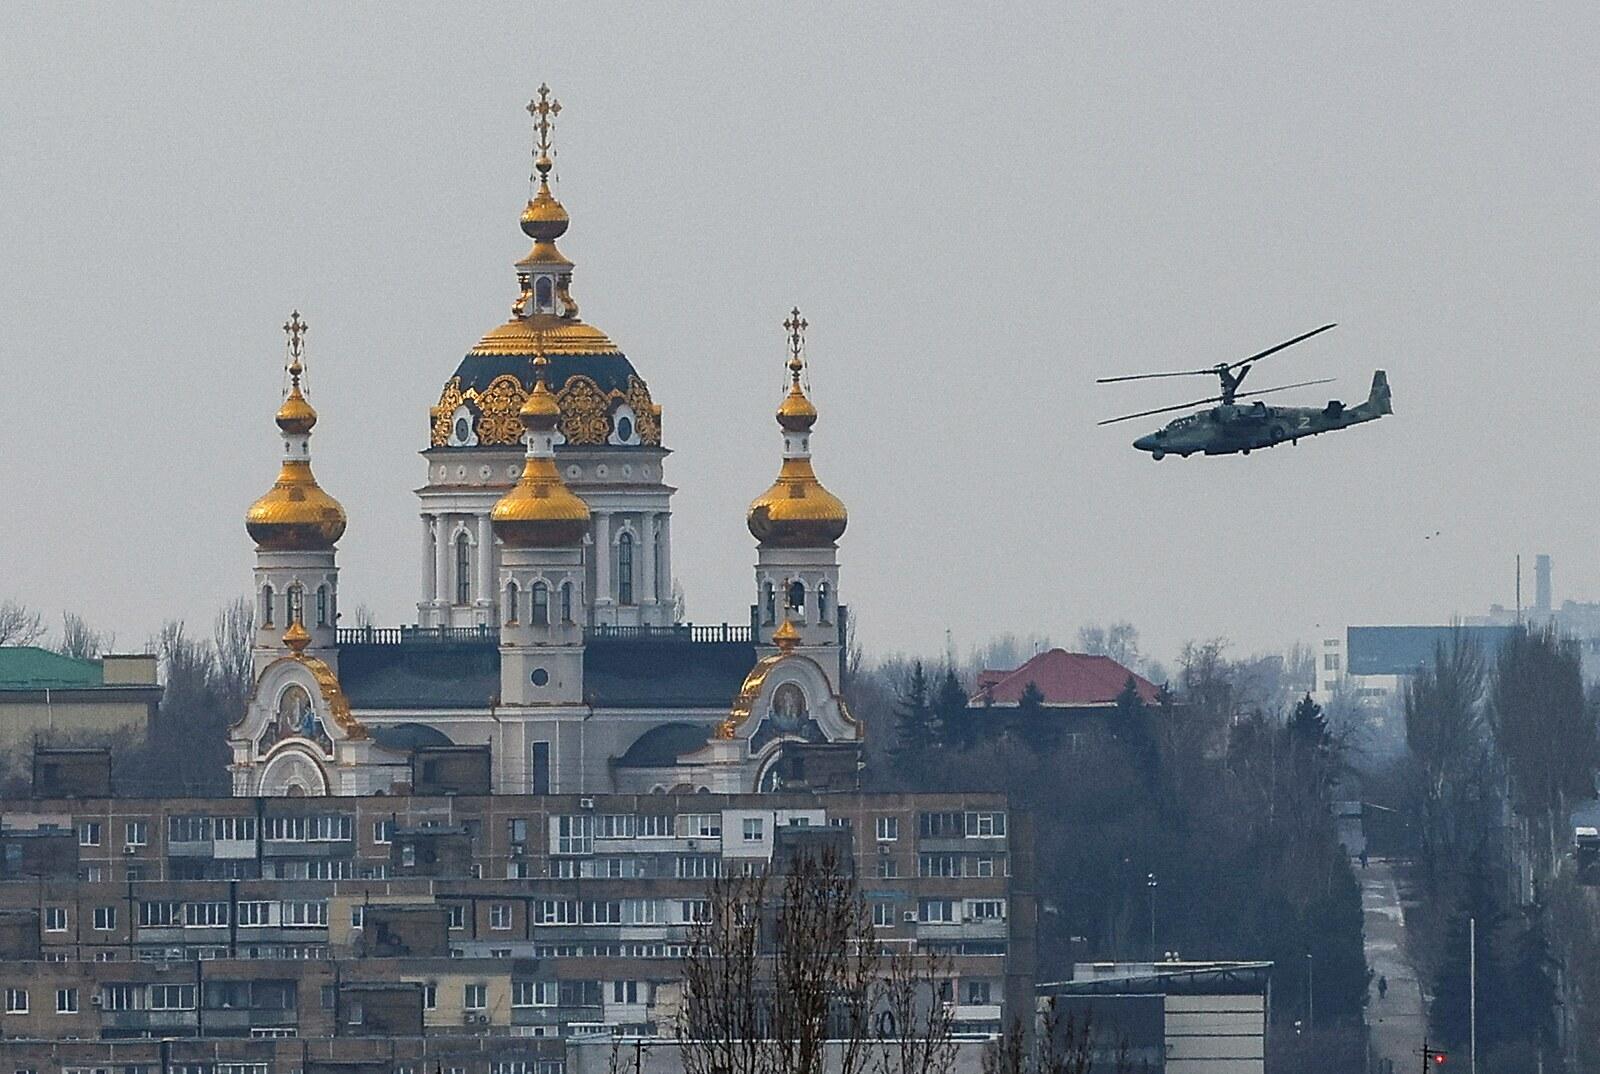 Zbraň, ktorá zaskočila Západ: „Putinov sup“ Ka-52 útočí v noci a z diaľky